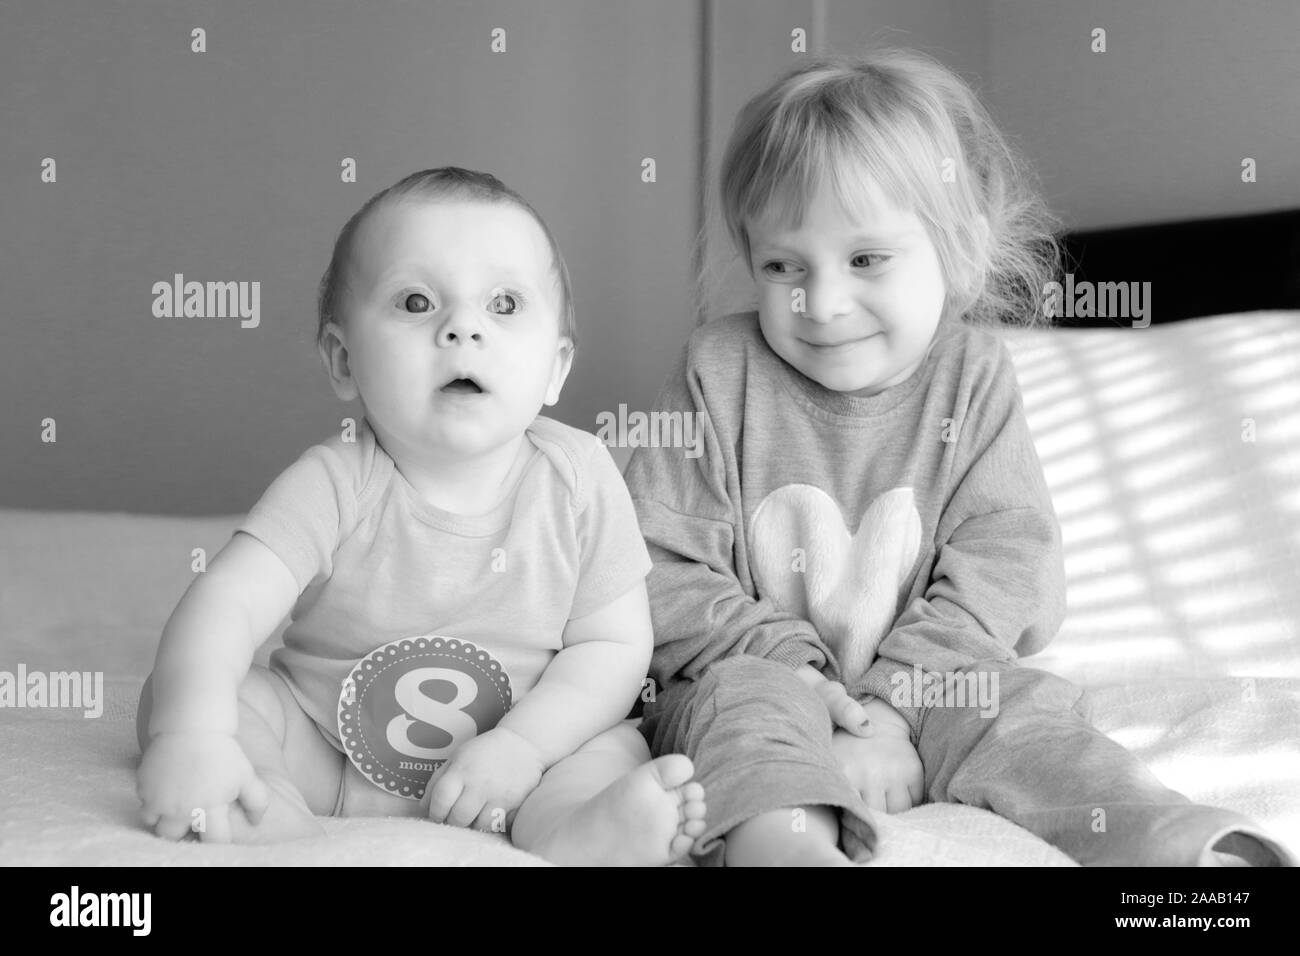 Nahaufnahme, Porträt von zwei Schwestern, 3 Jahre alt Blond Kleinkind Mädchen und 8 Monate altes Baby, Schwestern, beste Freunde, Happy Family Konzept Stockfoto